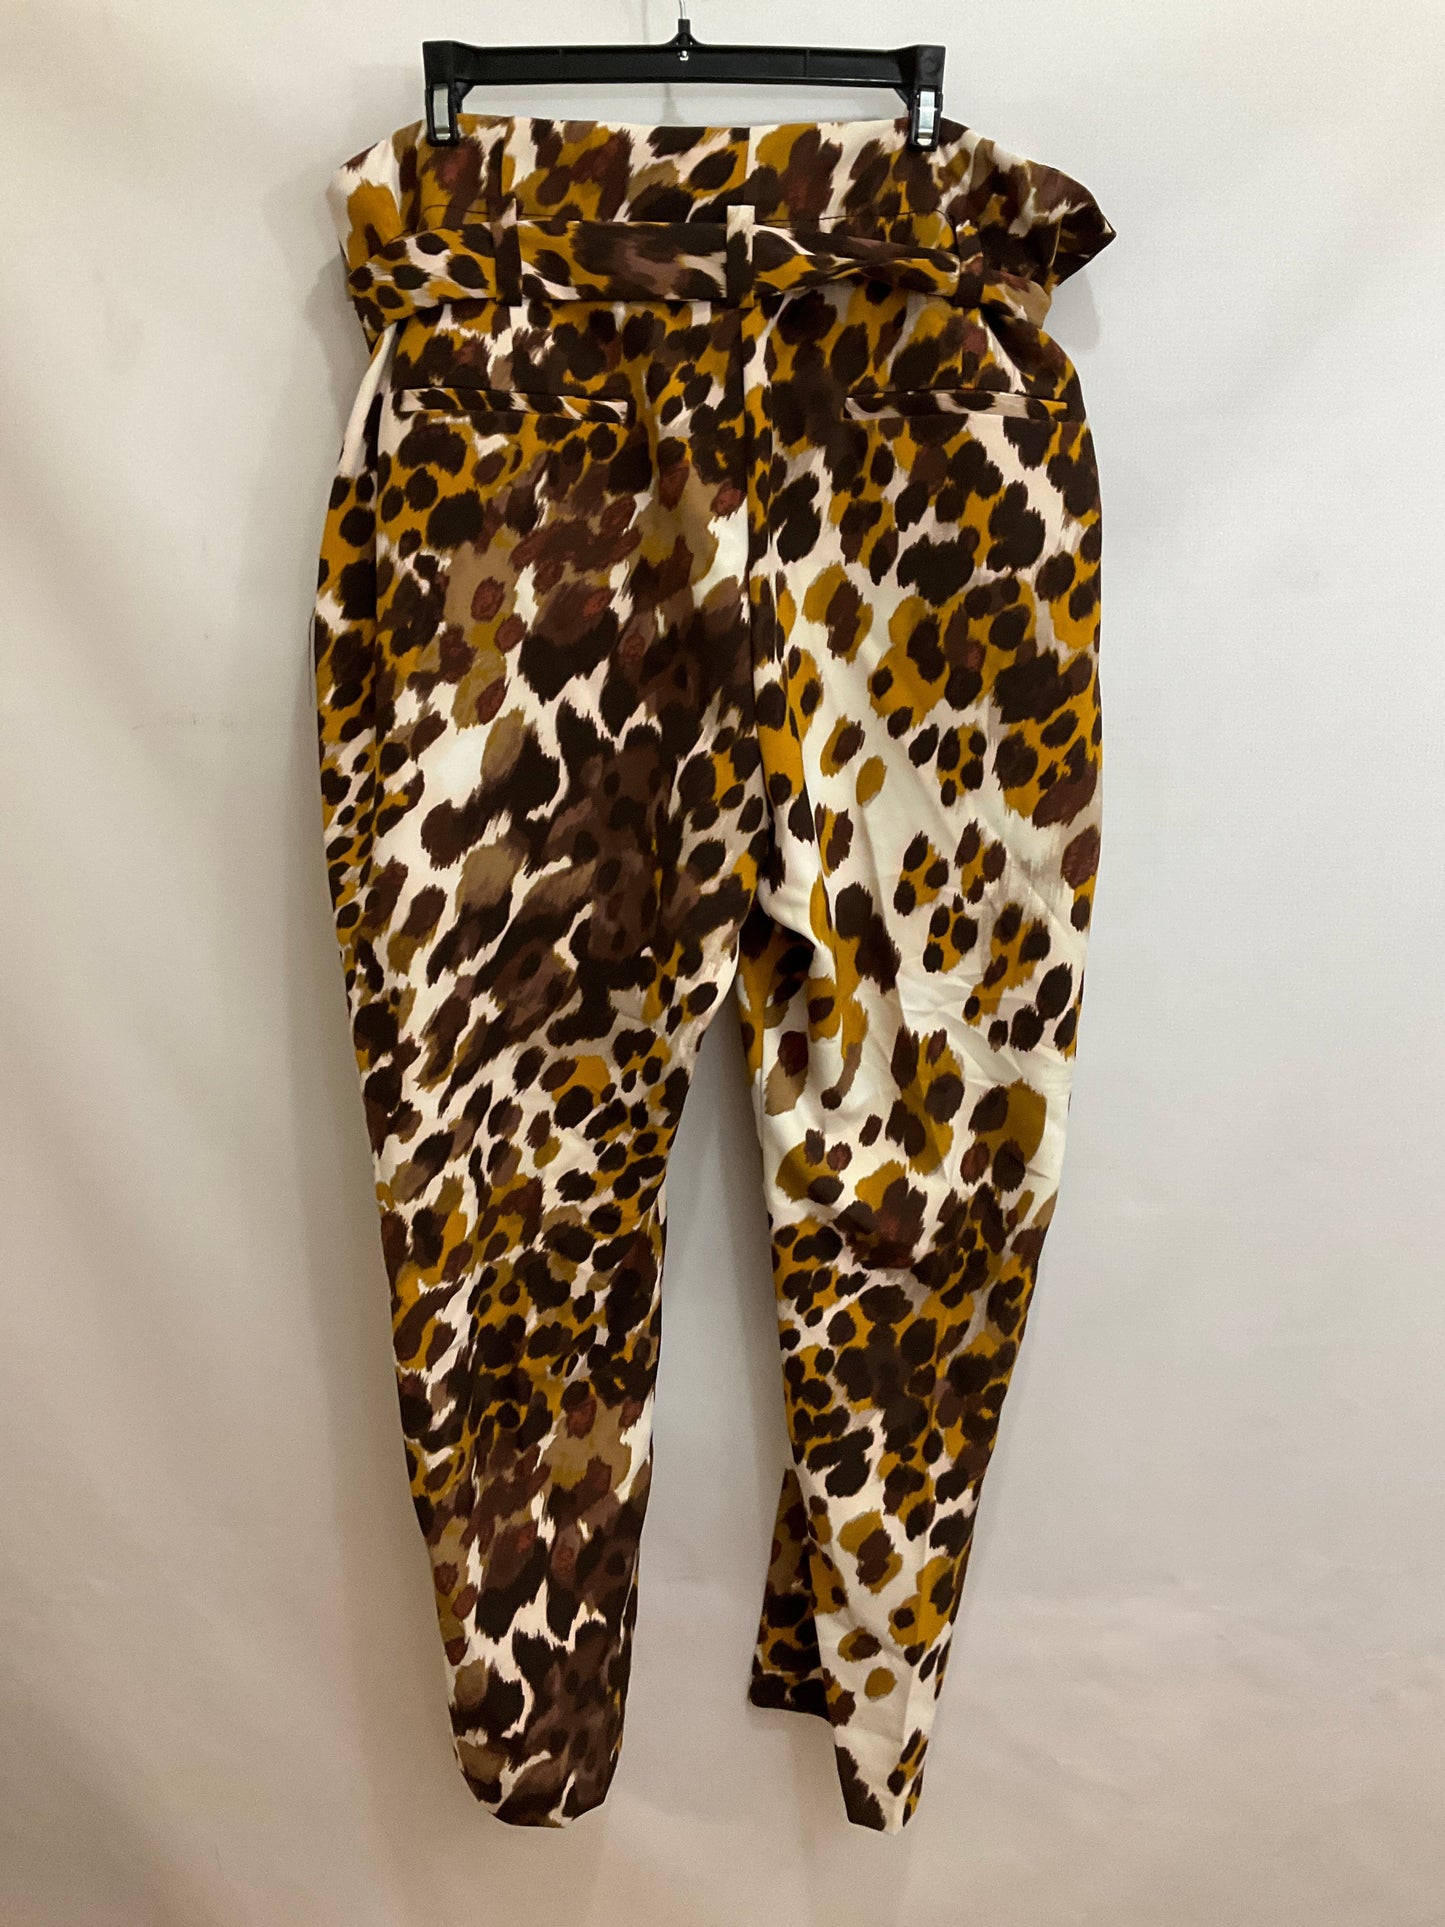 Animal Print Pants Work/dress New York And Co, Size 20